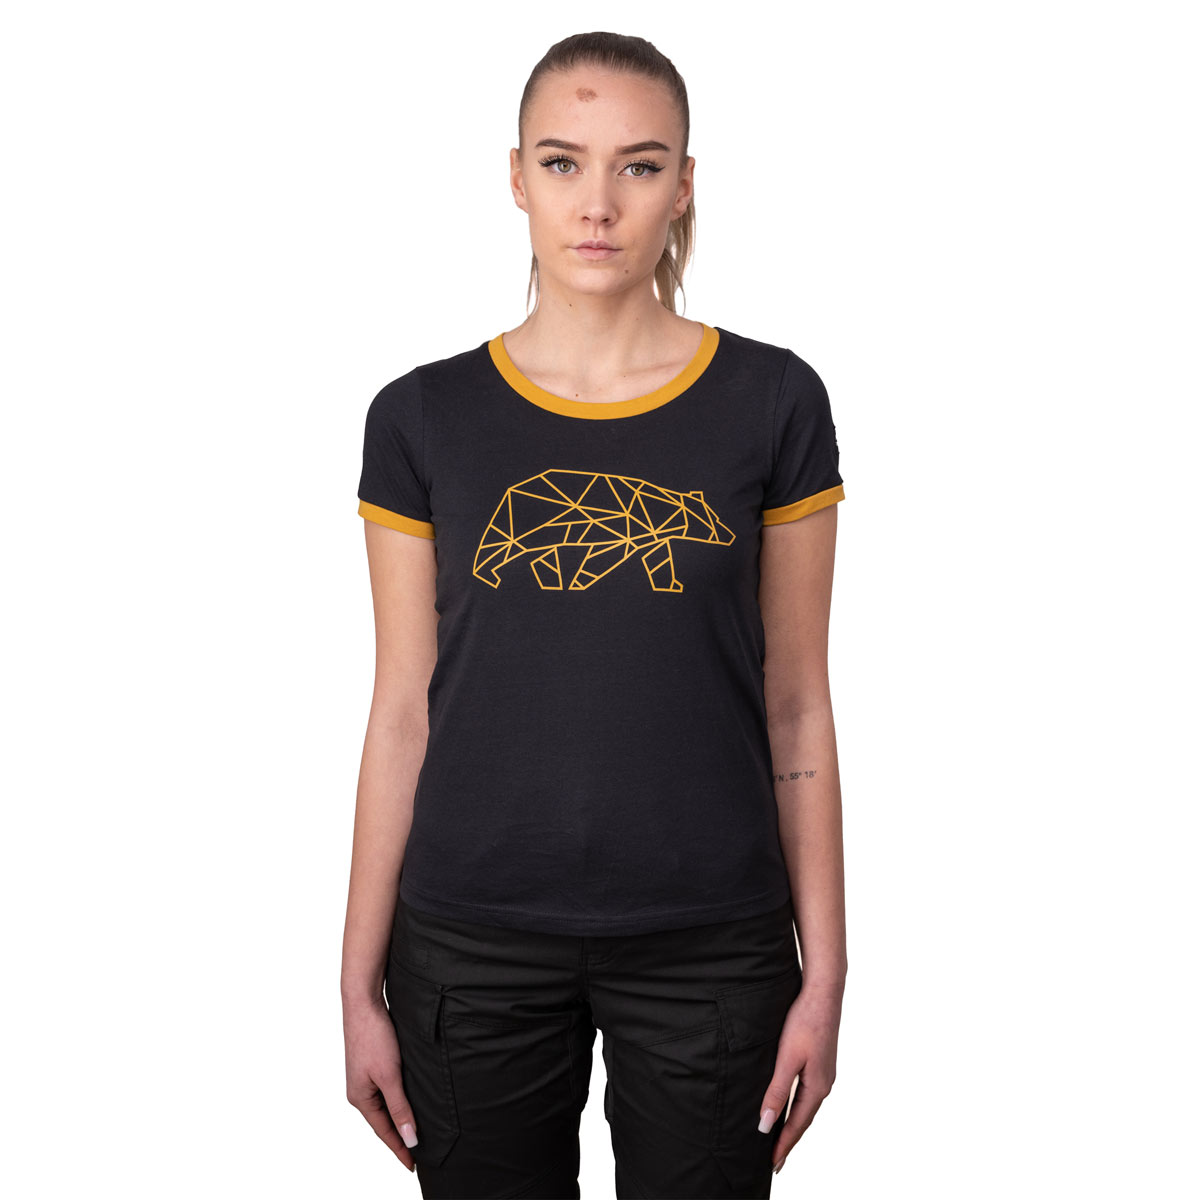 FORSBERG T-shirt with chest logo women